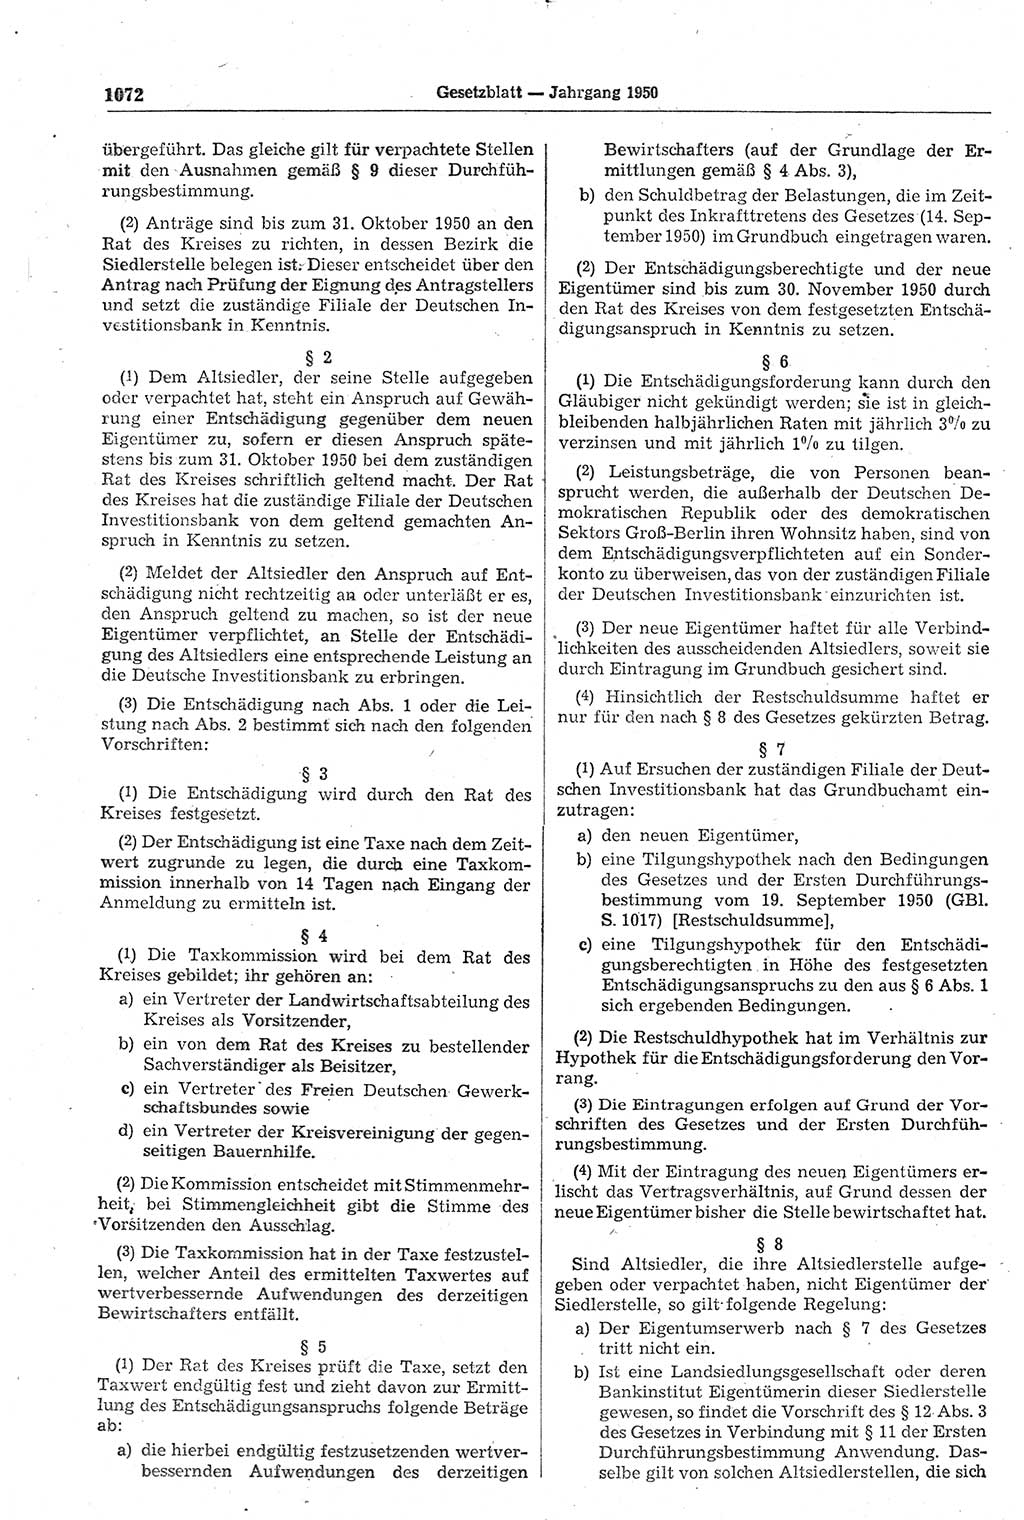 Gesetzblatt (GBl.) der Deutschen Demokratischen Republik (DDR) 1950, Seite 1072 (GBl. DDR 1950, S. 1072)